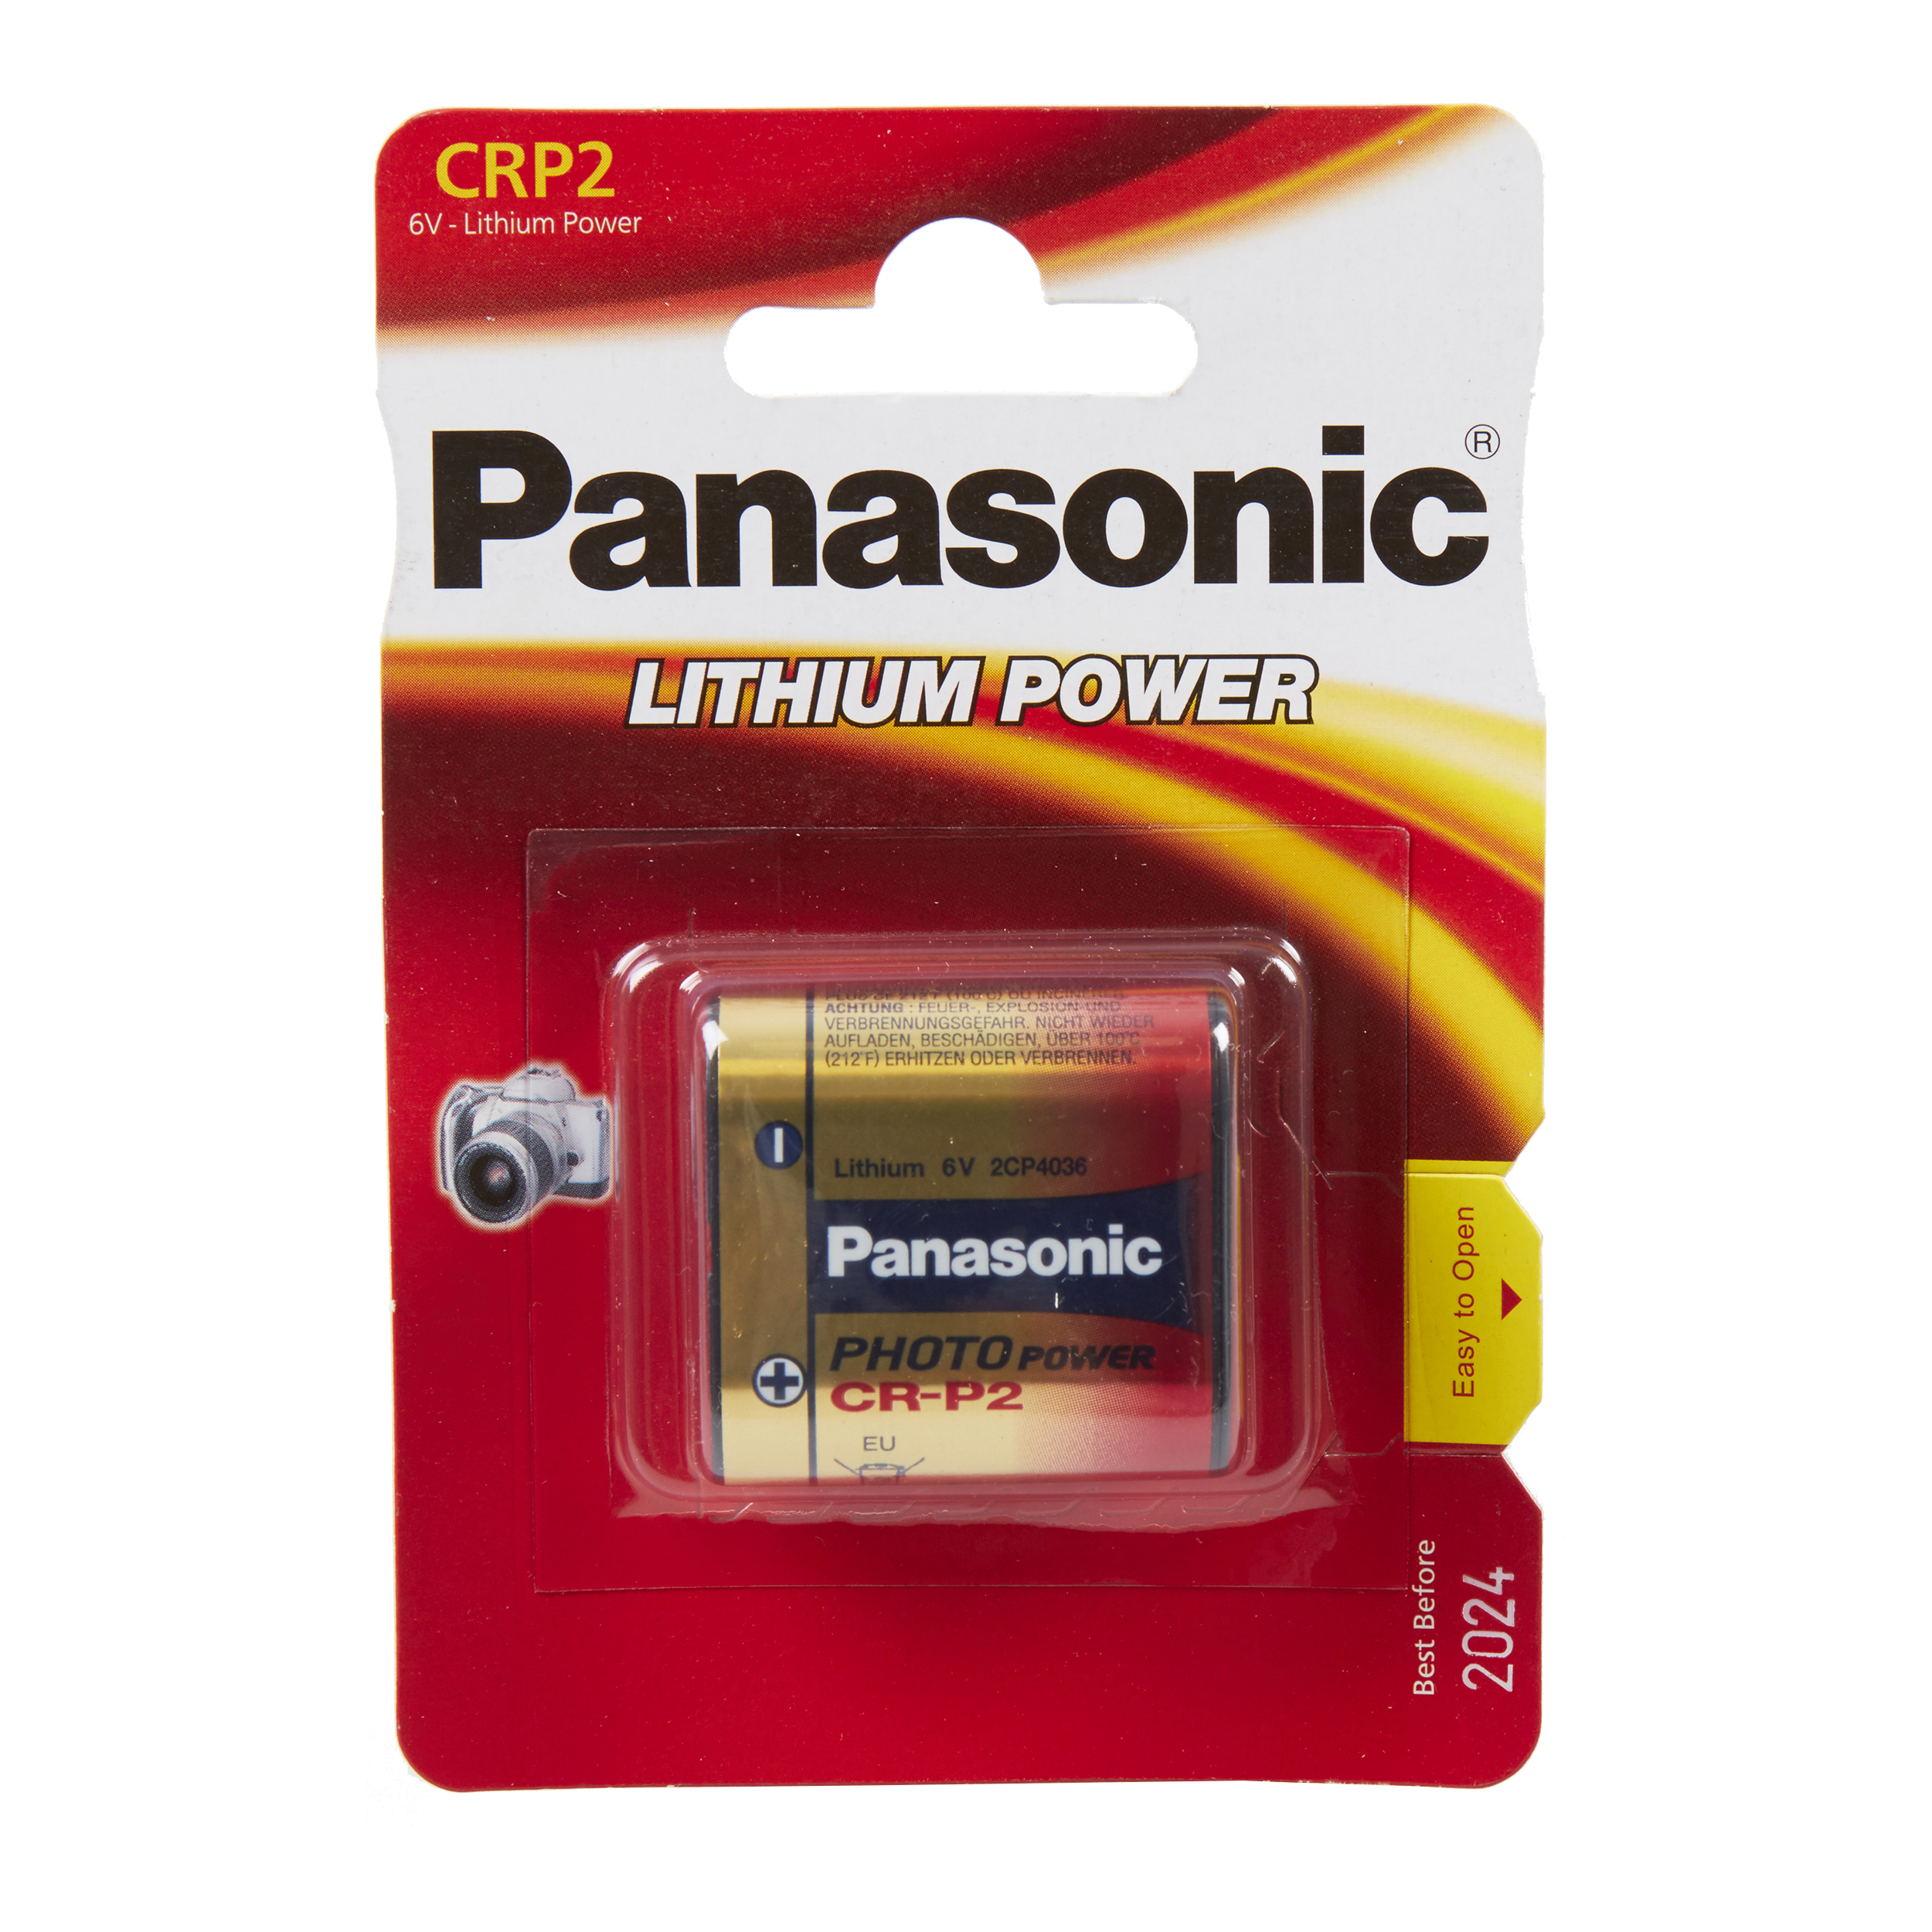 Panasonic CRP2P Lithium, Pack of 1